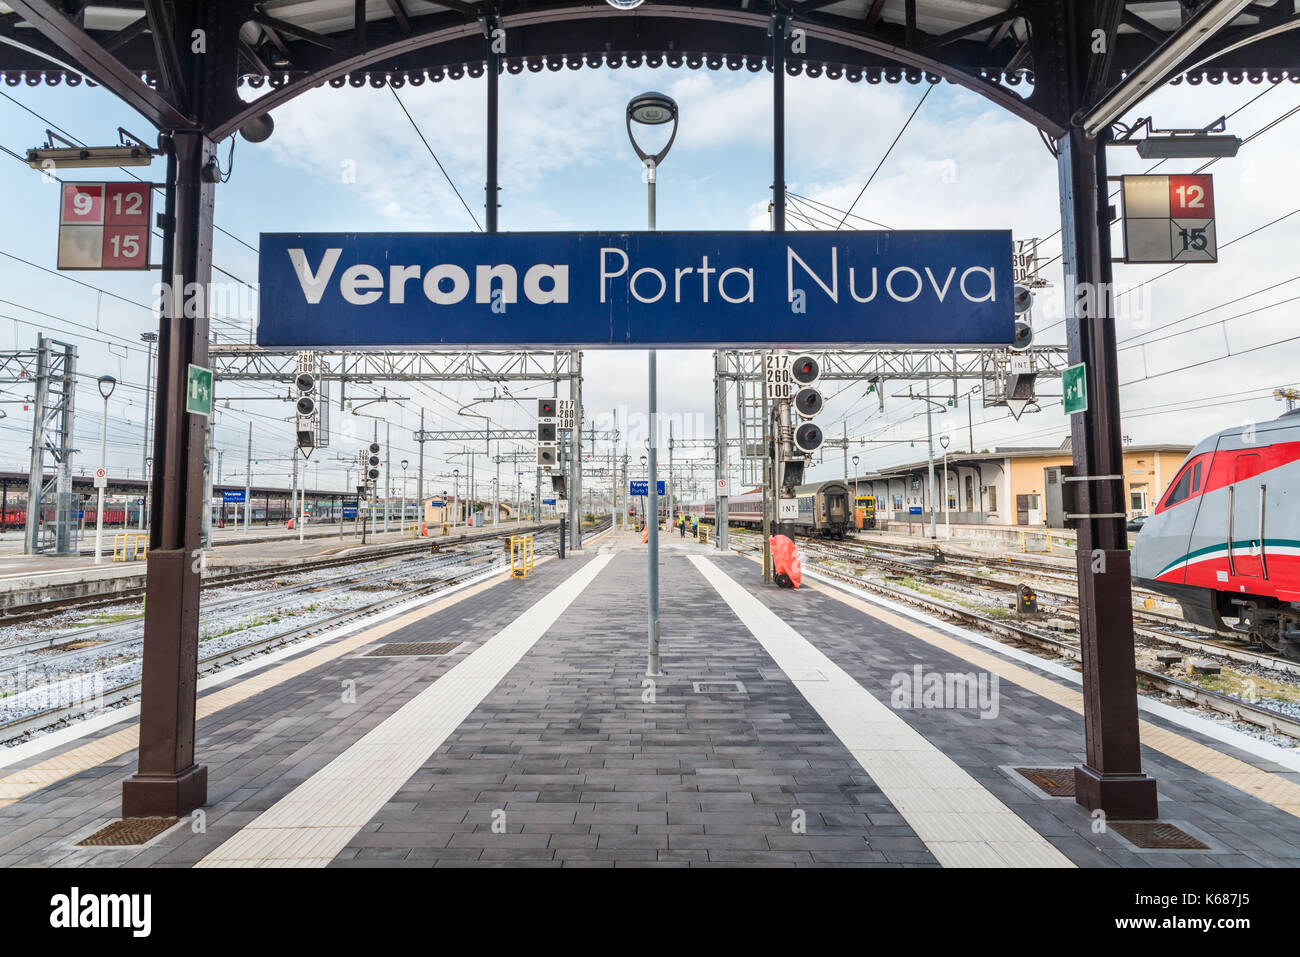 Verona station immagini e fotografie stock ad alta risoluzione - Alamy